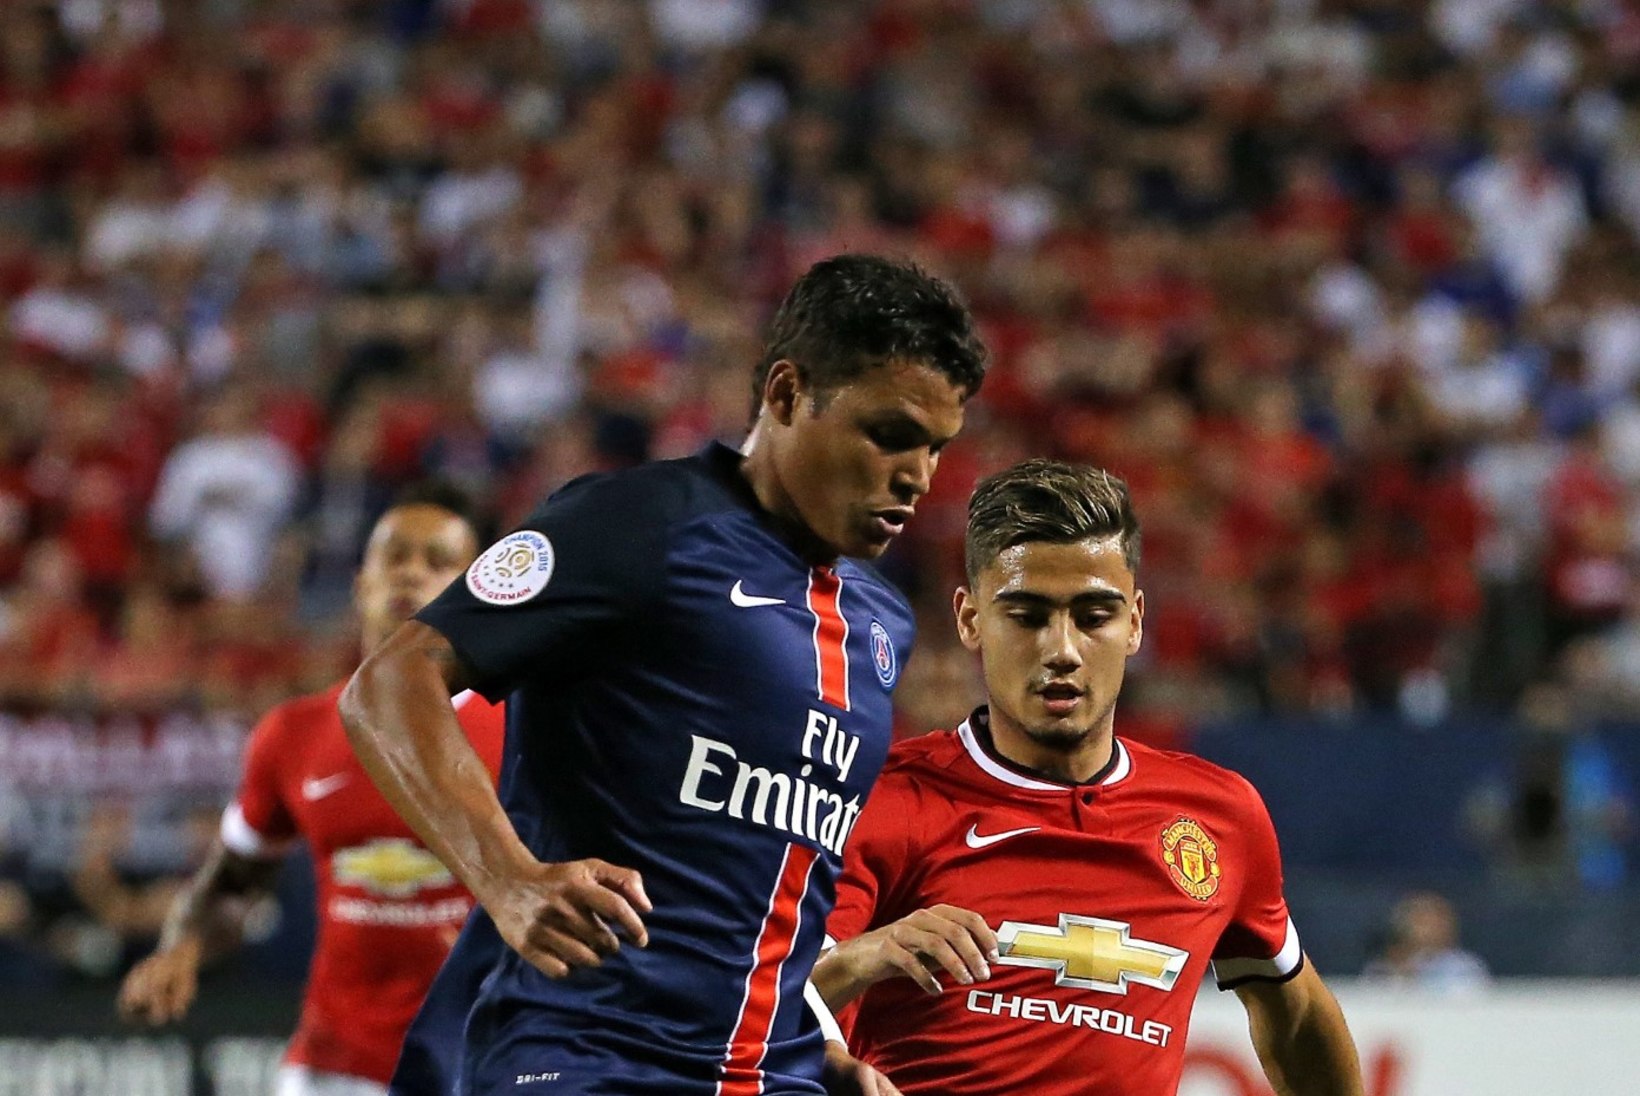 GALERII | PSG suutis Manchester United vastupanu murda juba avapoolajal